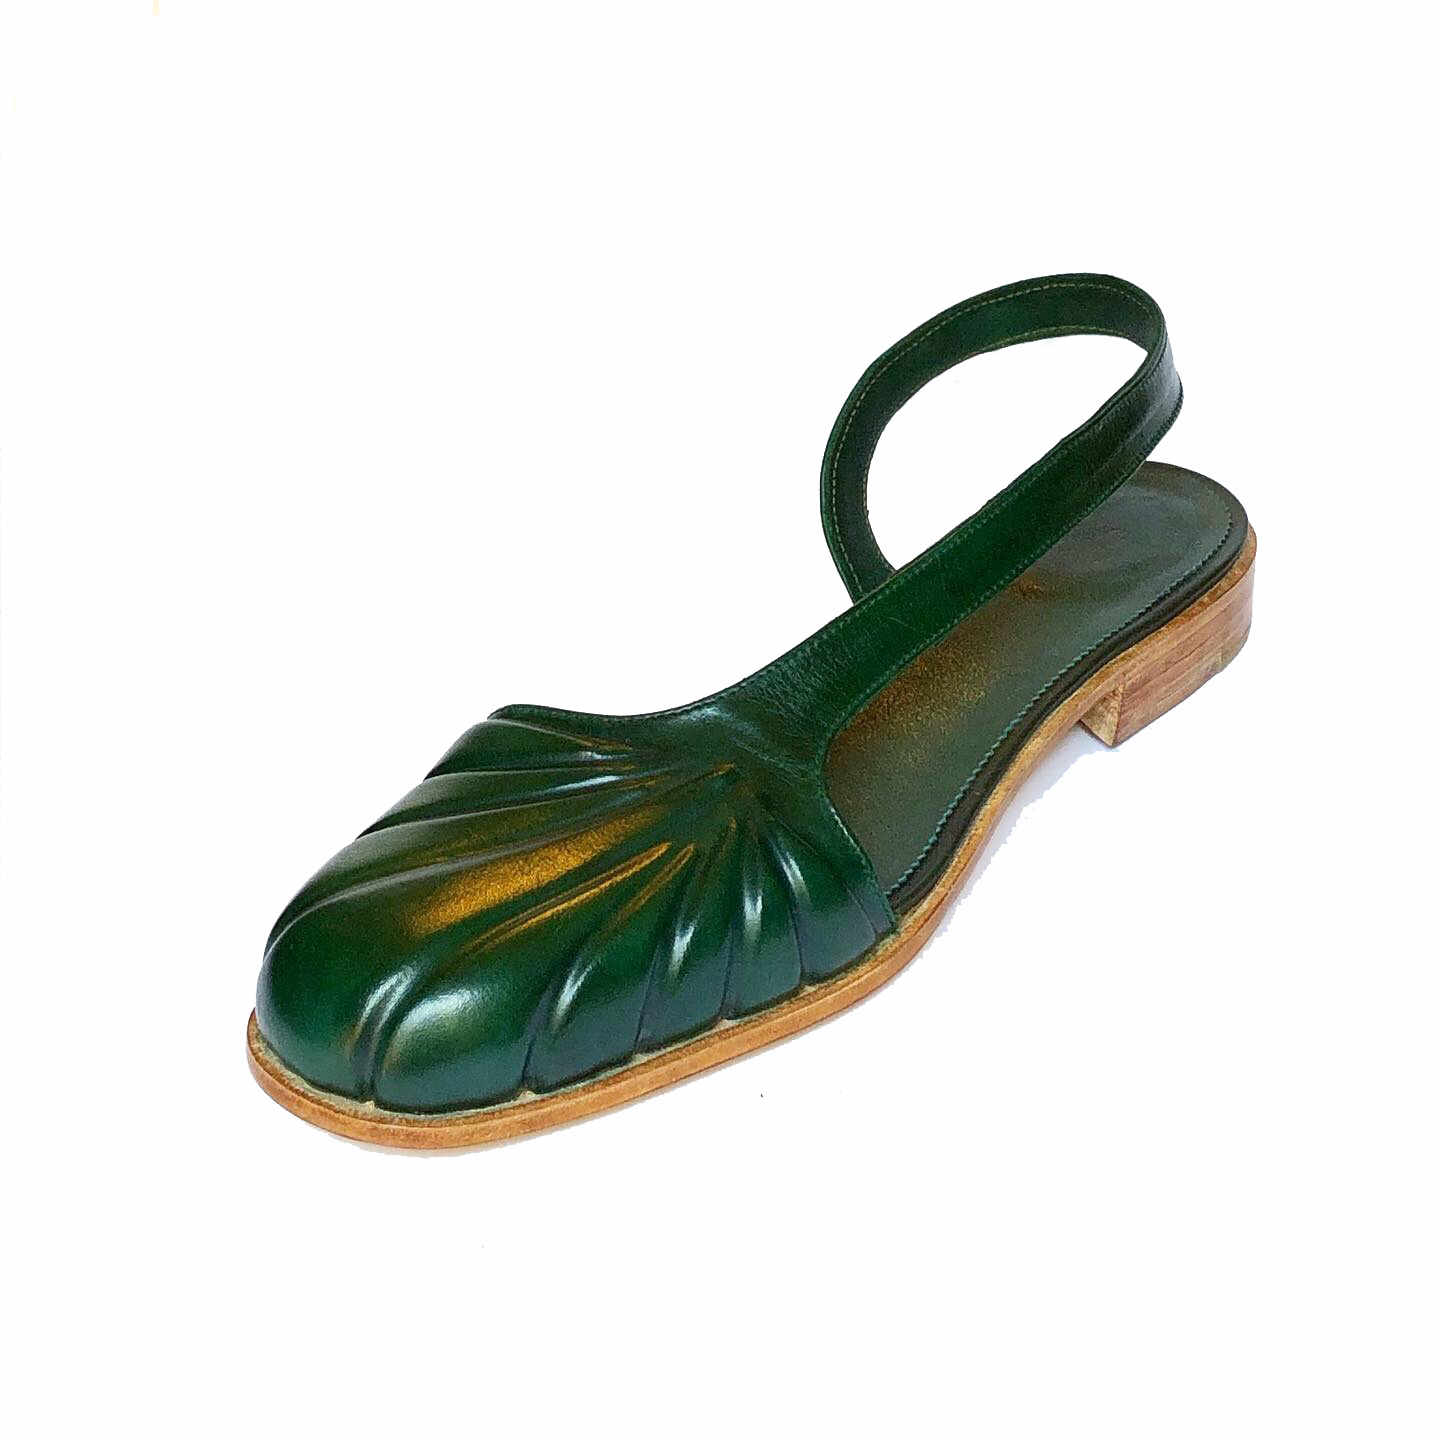 Prototipos de zapatos verdes